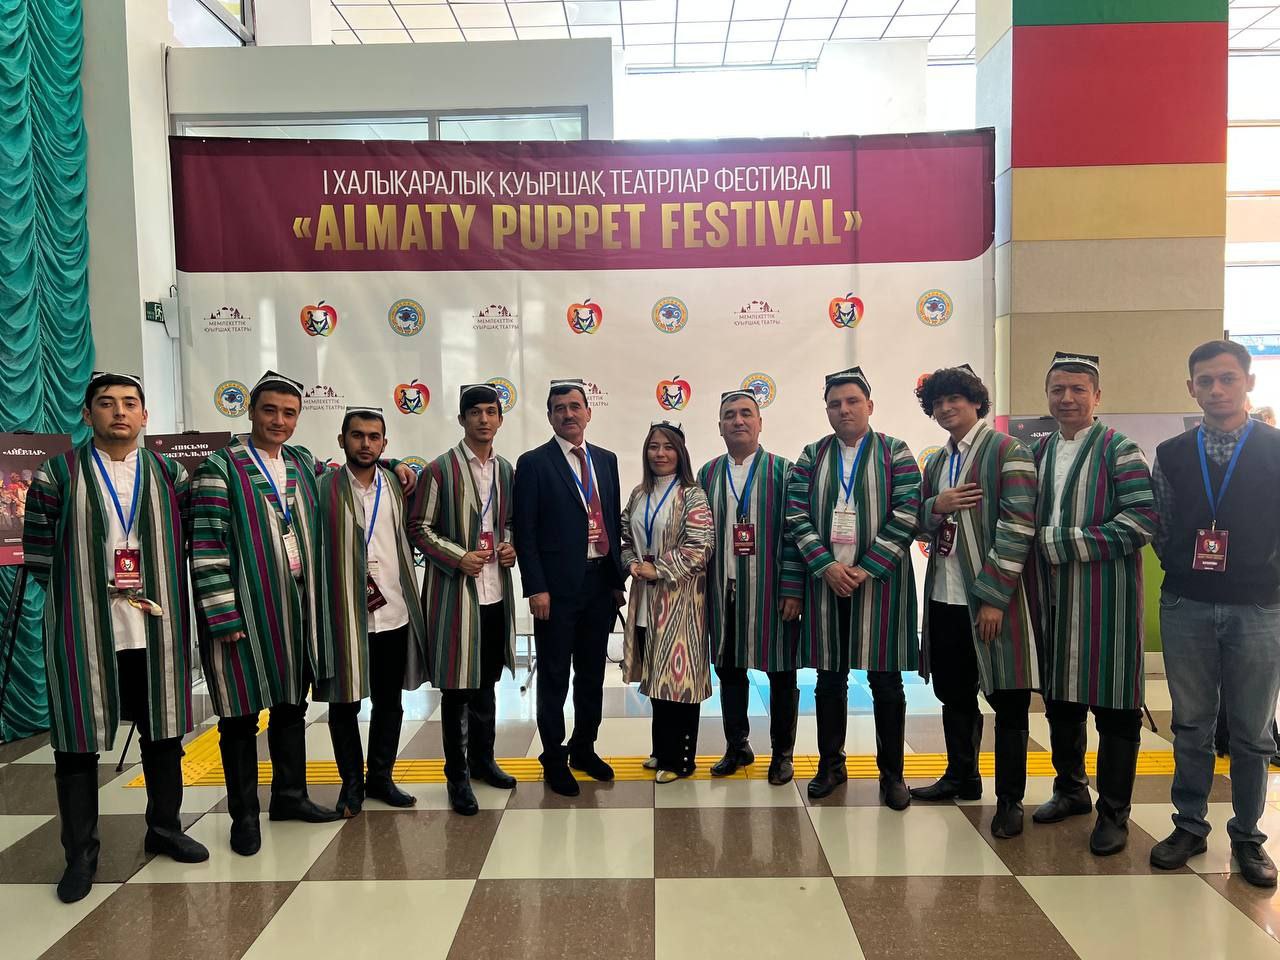 Almaty puppet festival - Qo‘g‘irchoq teatrlari uchun xalqaro maydon